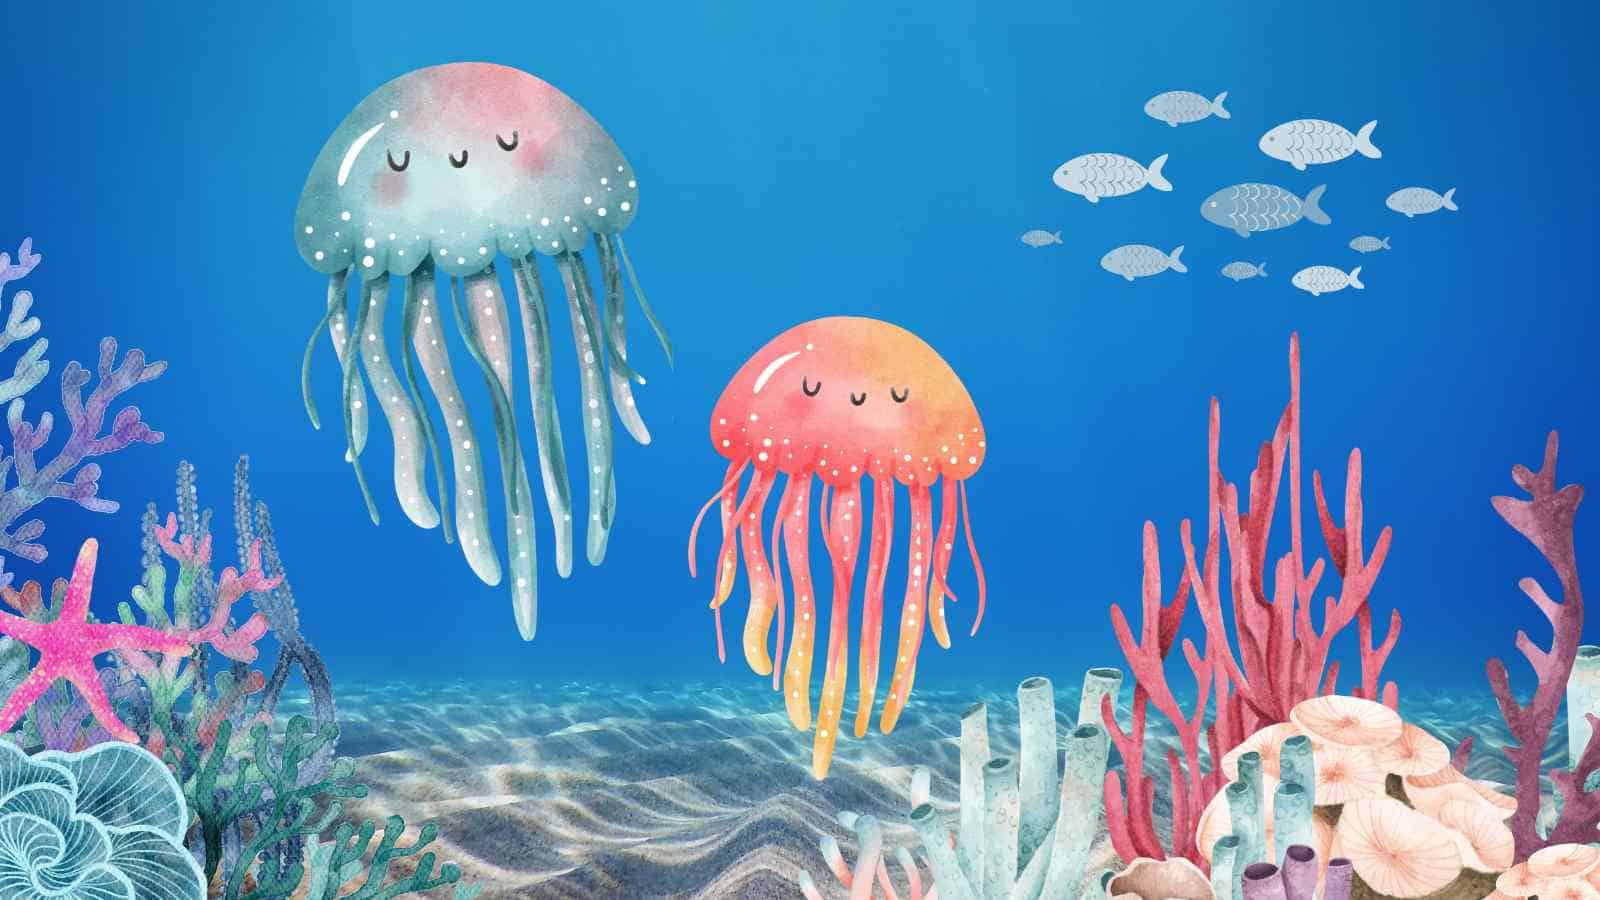 SeaOrbiter è un centro scientifico situato.. Dentro l'oceano! Grazie a lui gli scienziati possono scoprire i segreti degli abissi marini.